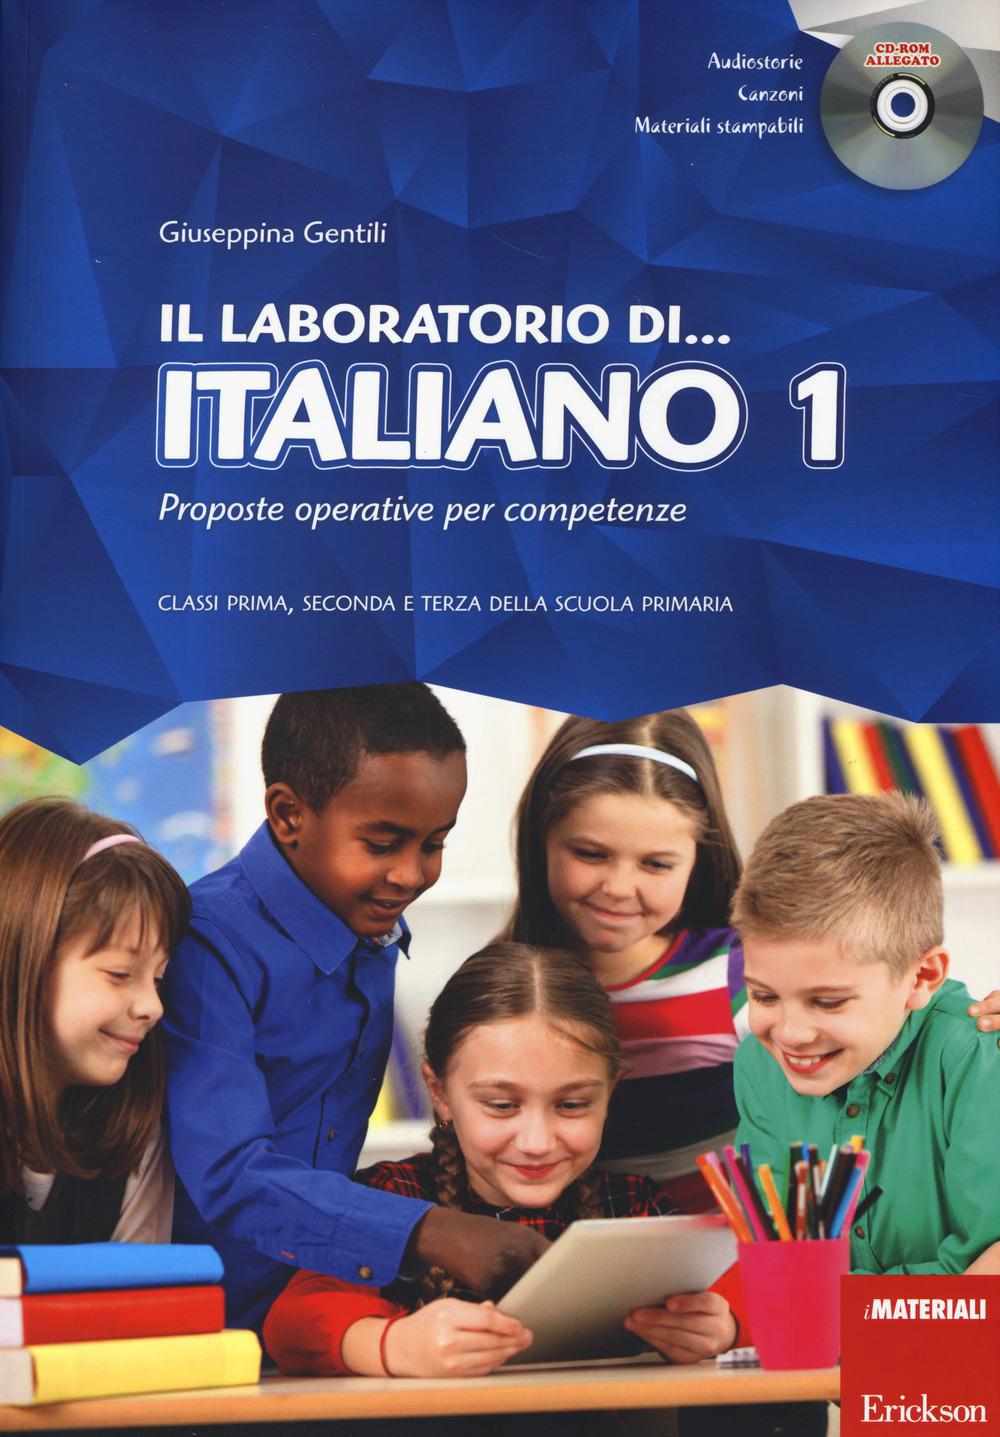 Laboratorio Di Italiano. Didattica Per Competenze Classi 1 -2 -3 Primaria 